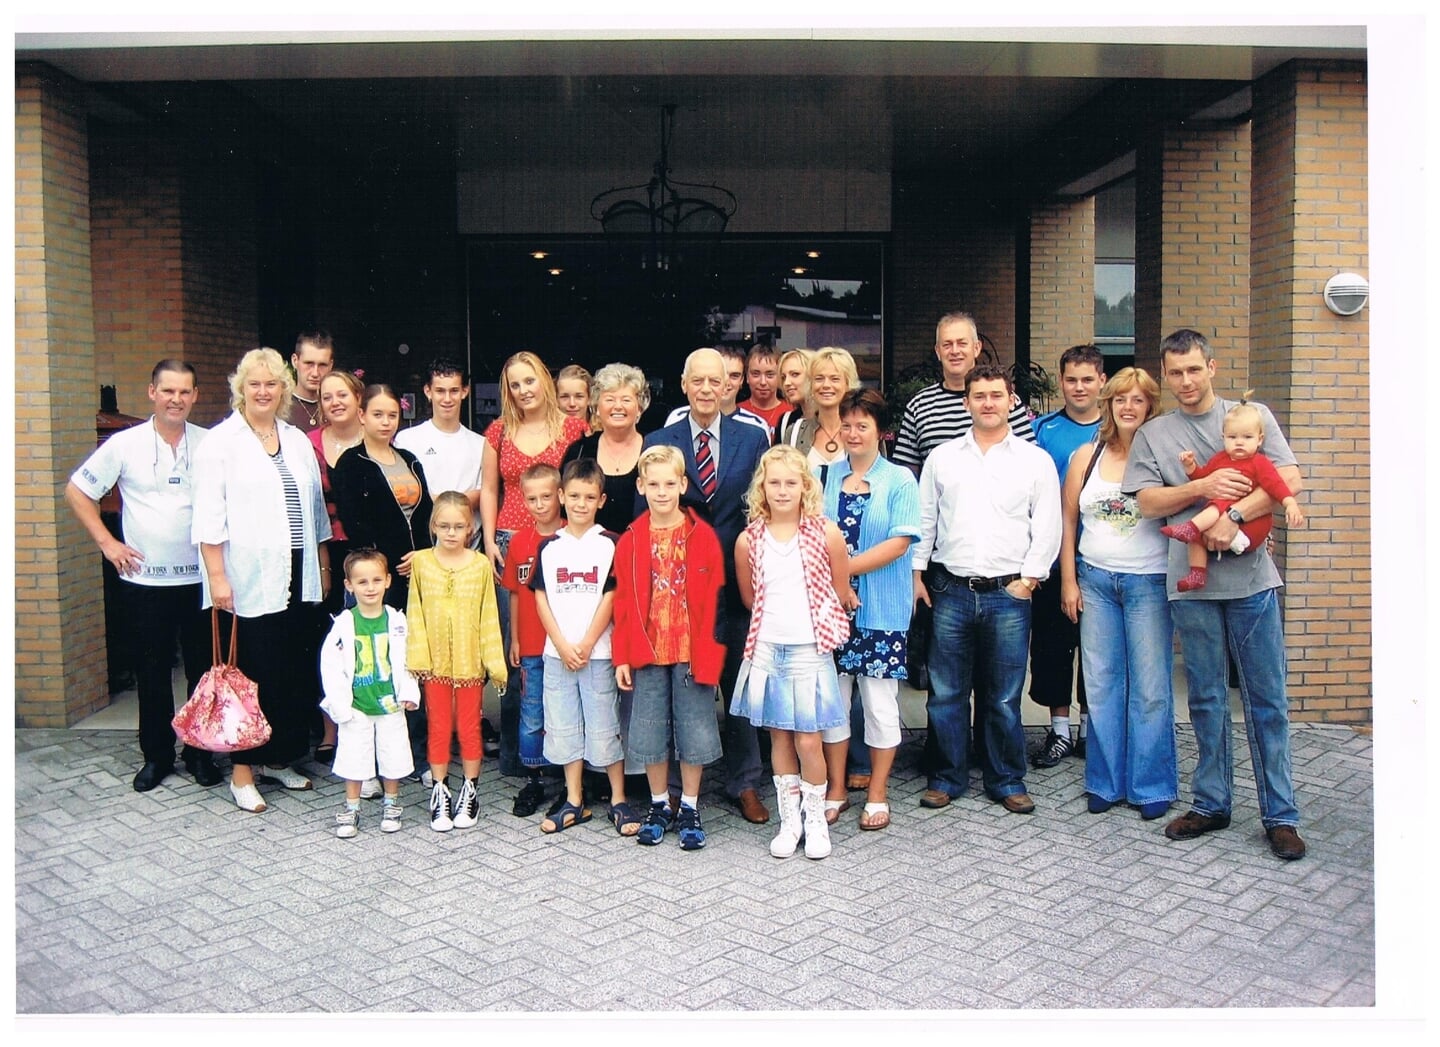 Klaas Luut Koffeman en Jannie Koffeman-Ras met hun kinderen en kleinkinderen, enkele jaren geleden.